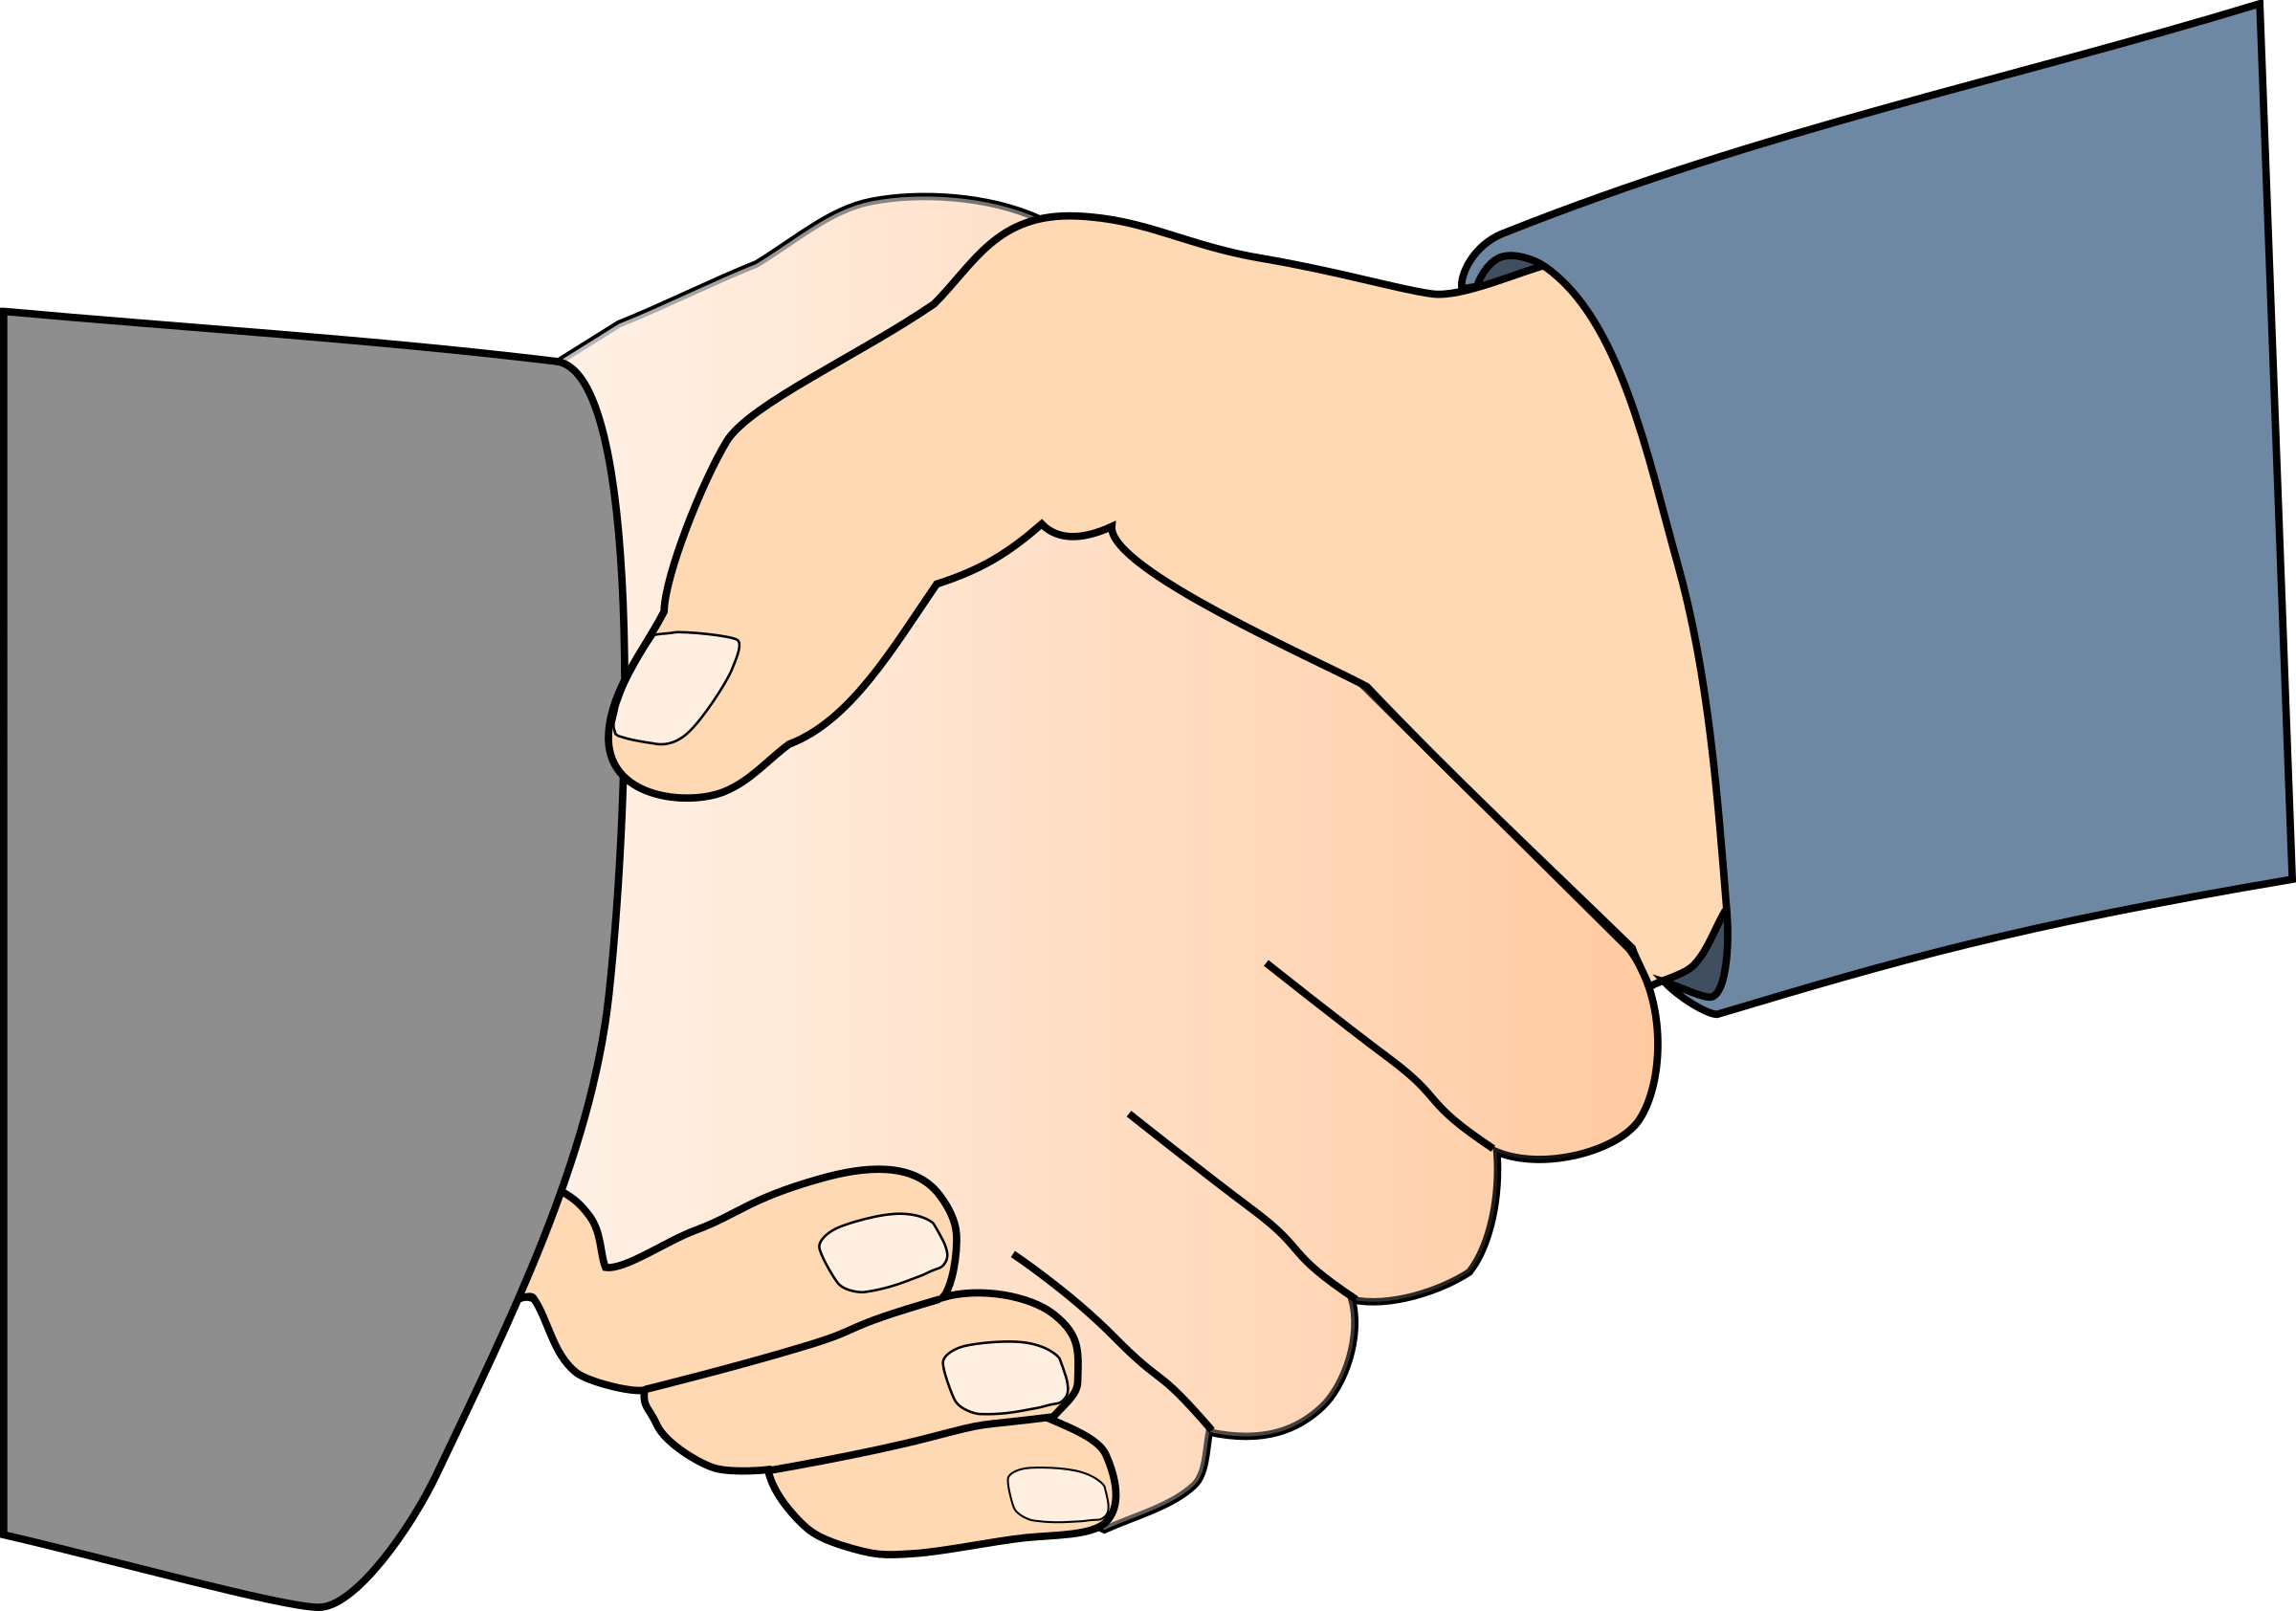 free business handshake clipart - photo #32